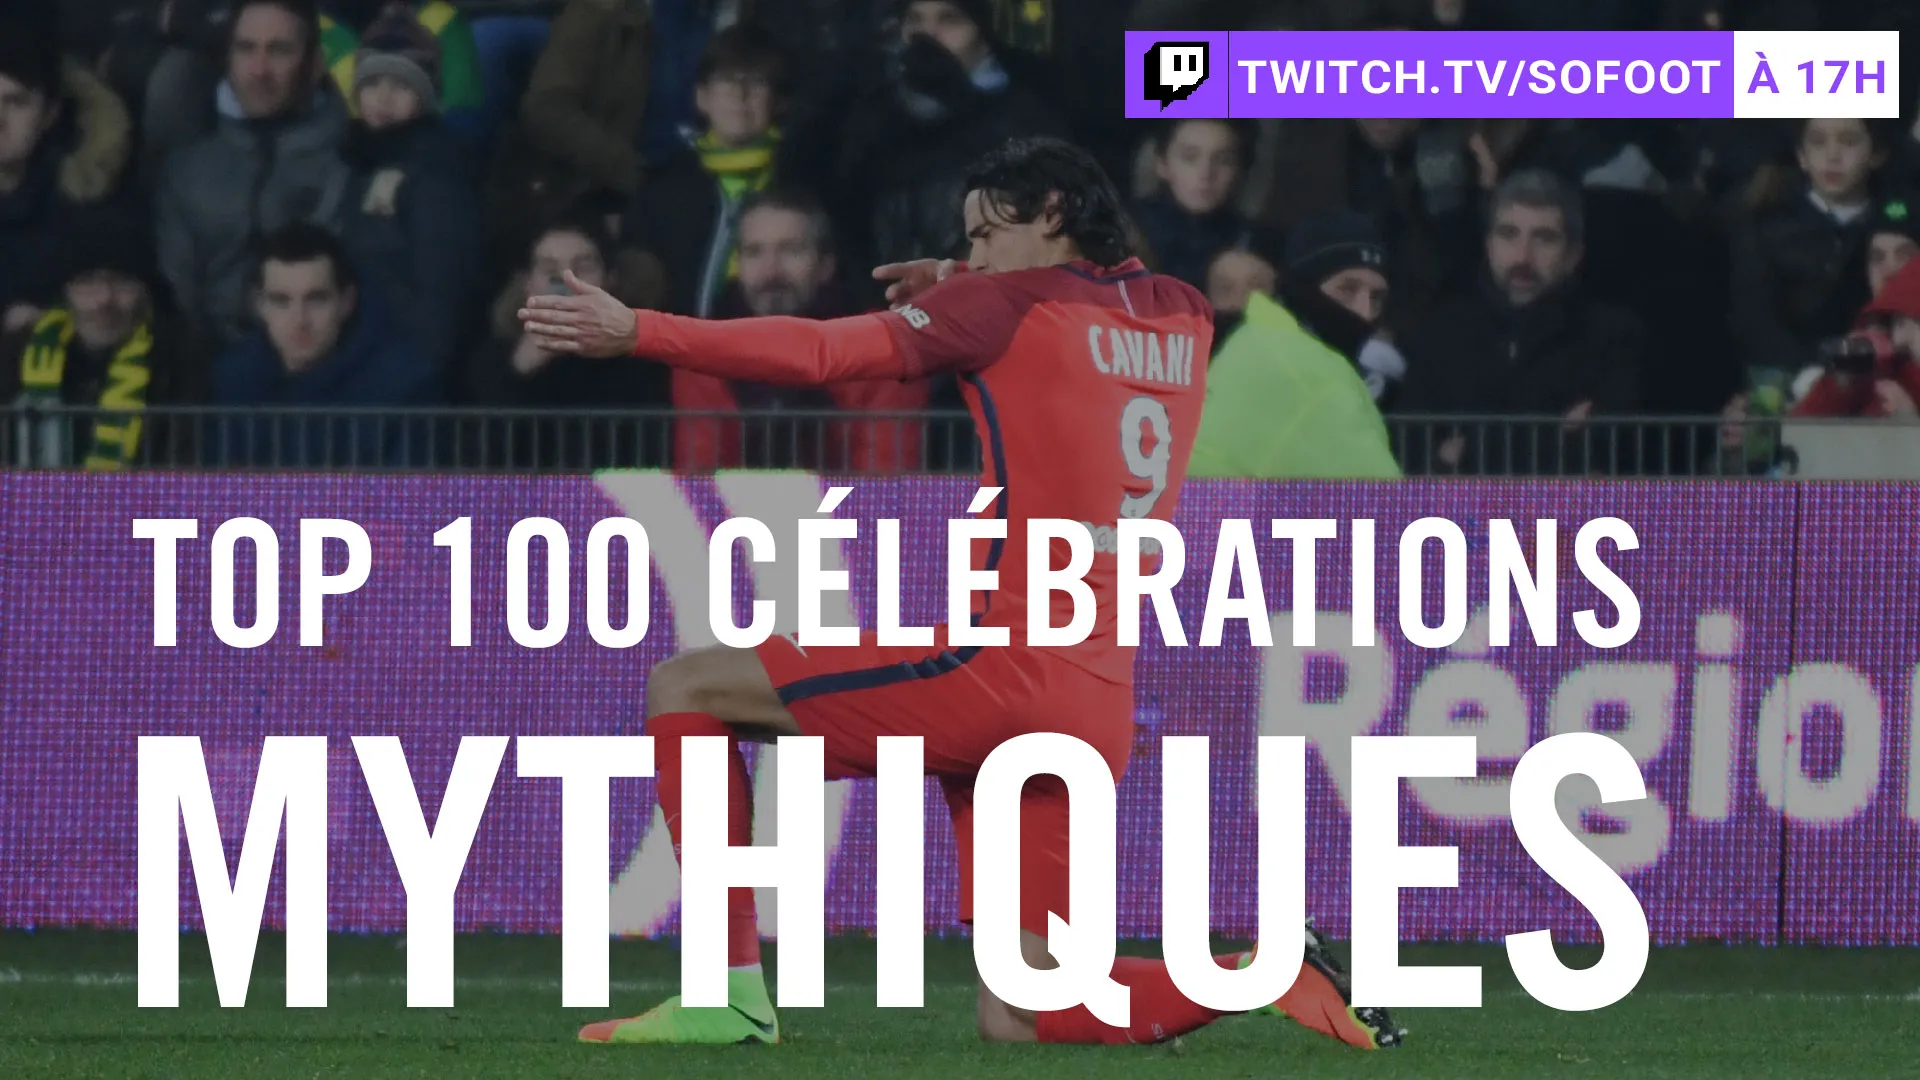 Live Twitch 17h : Top 100 célébrations mythiques